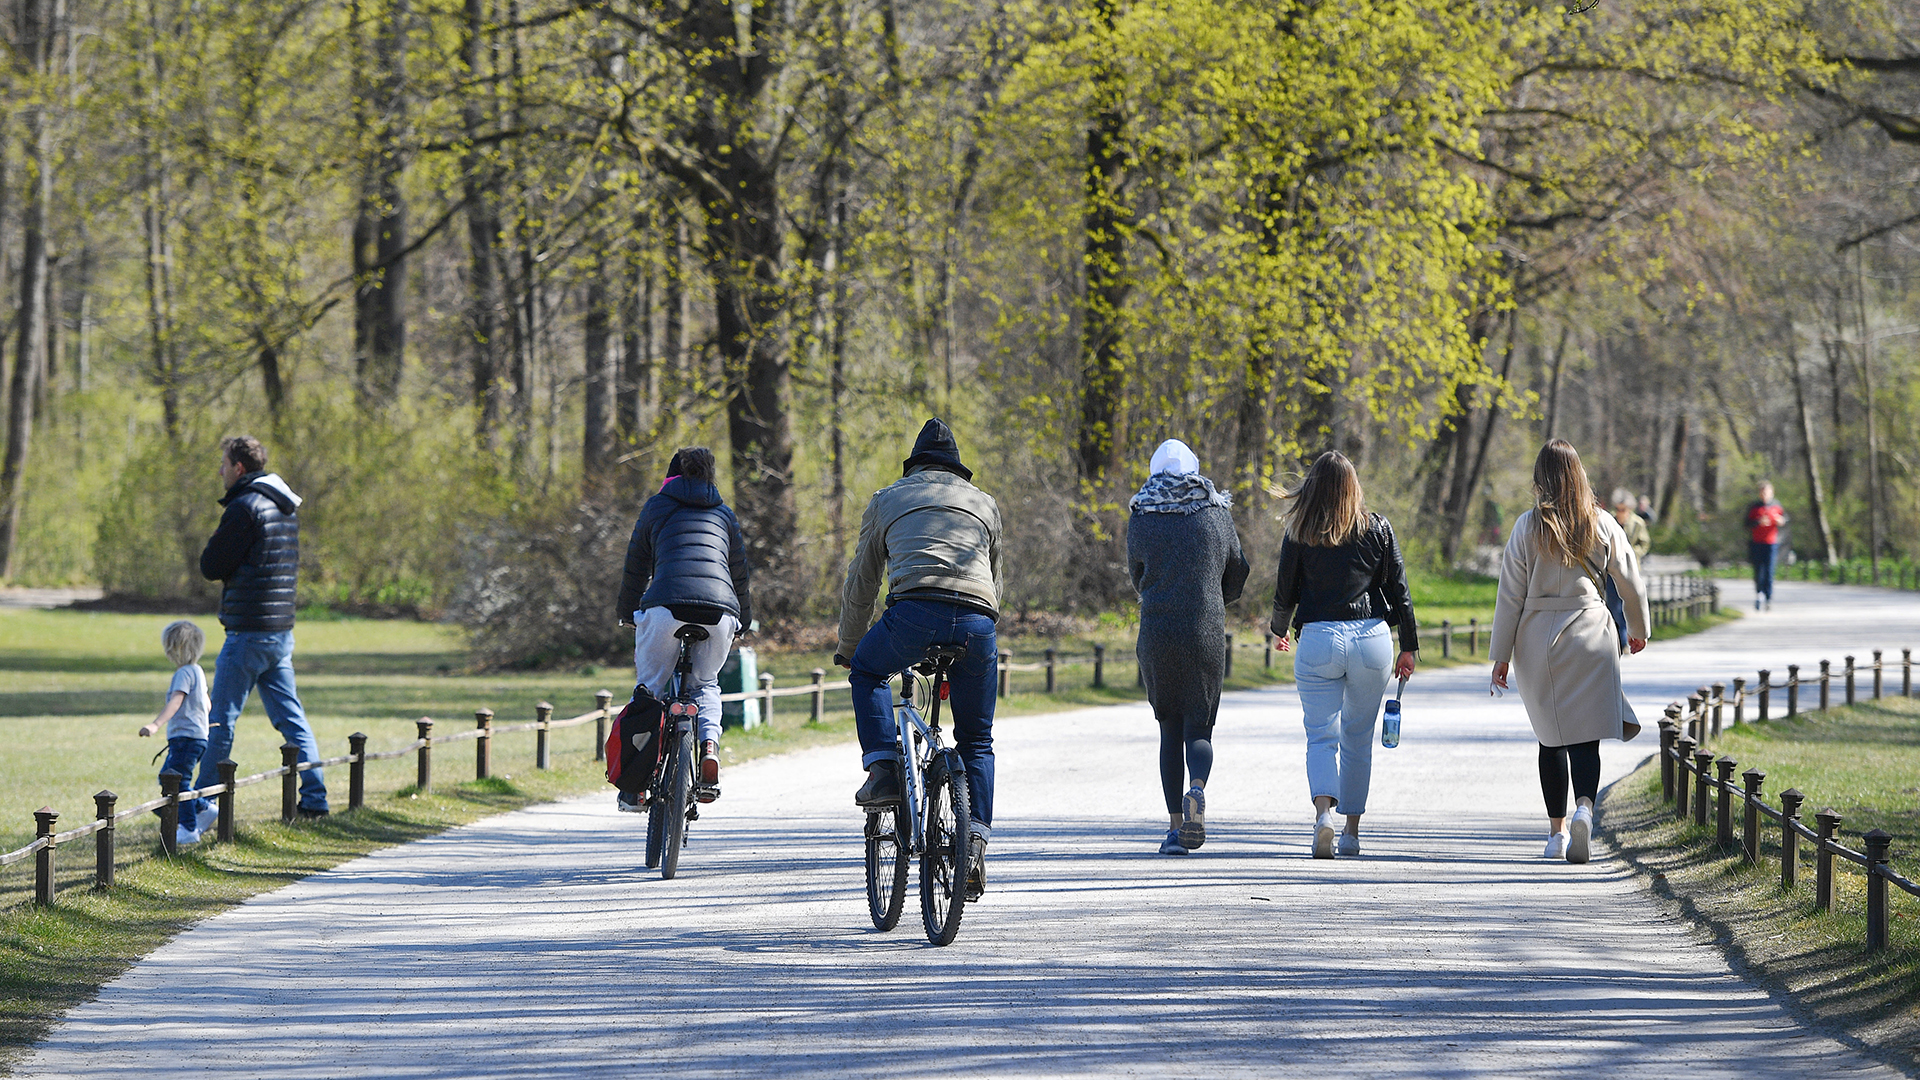 Spaziergänger und Fahrradfahrer im Englischen Garten in München | picture alliance / SvenSimon